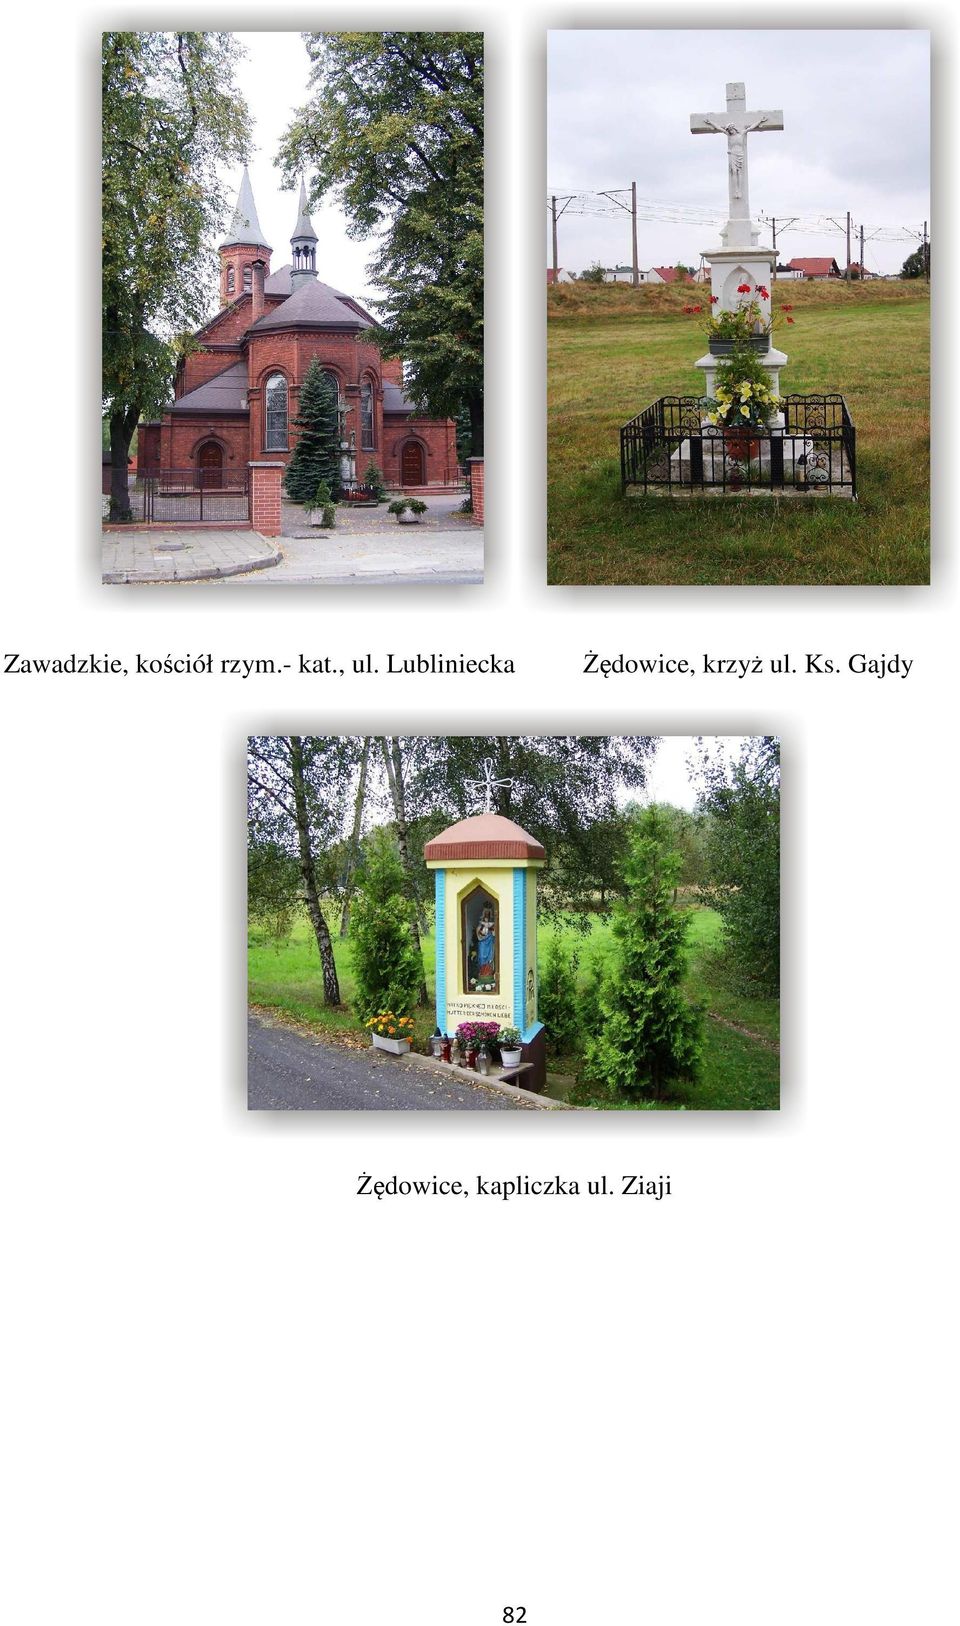 Lubliniecka Żędowice, krzyż